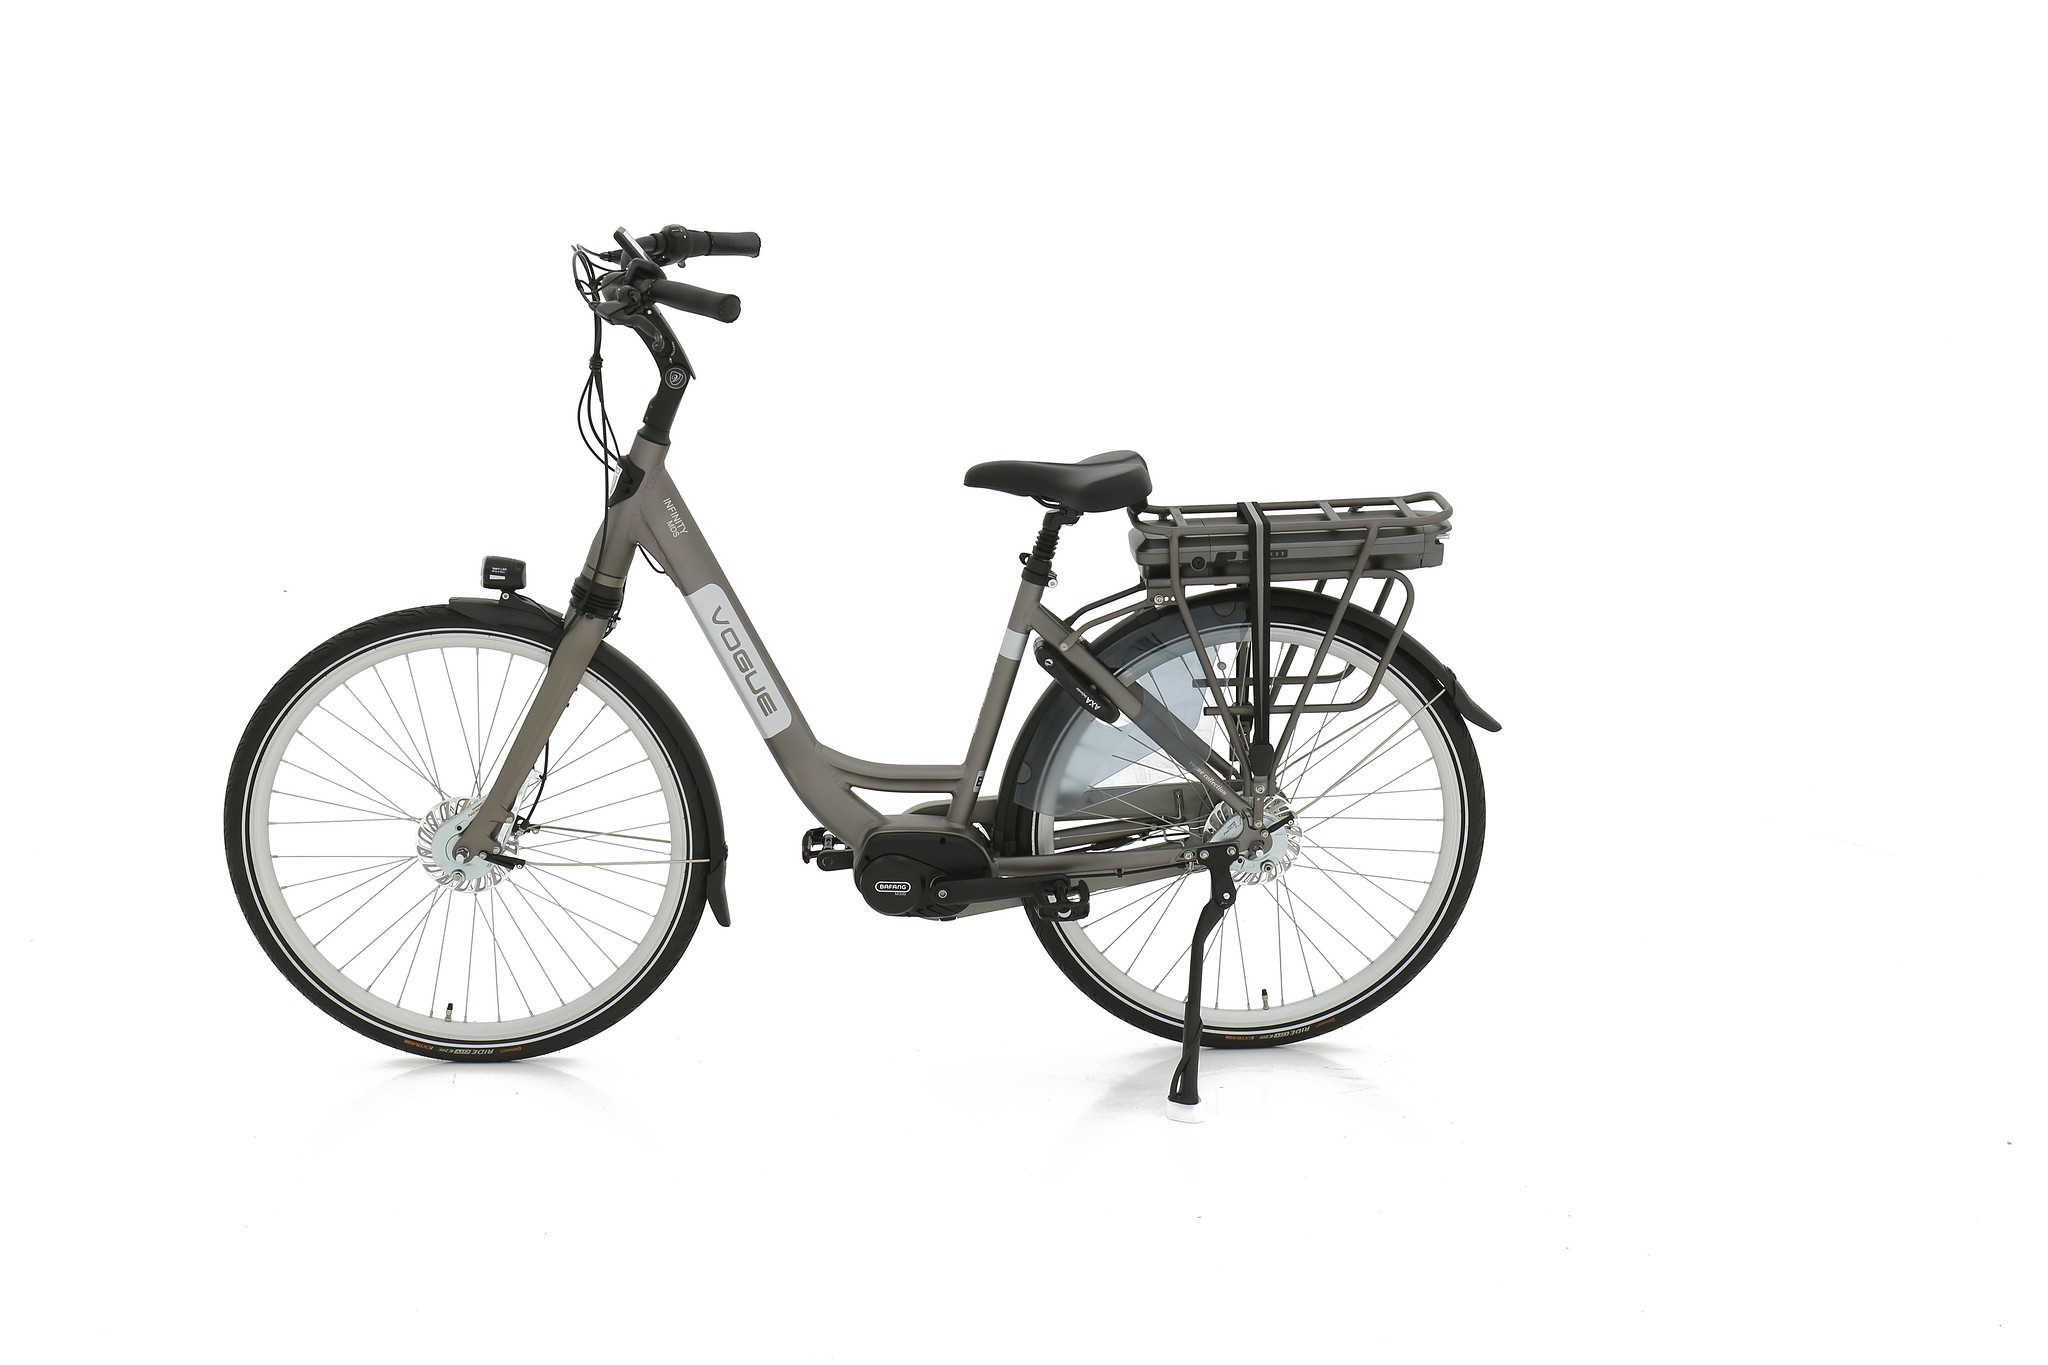 Vogue Elektrische fiets Infinity MDS dames 48cm 468 Watt - Grijs